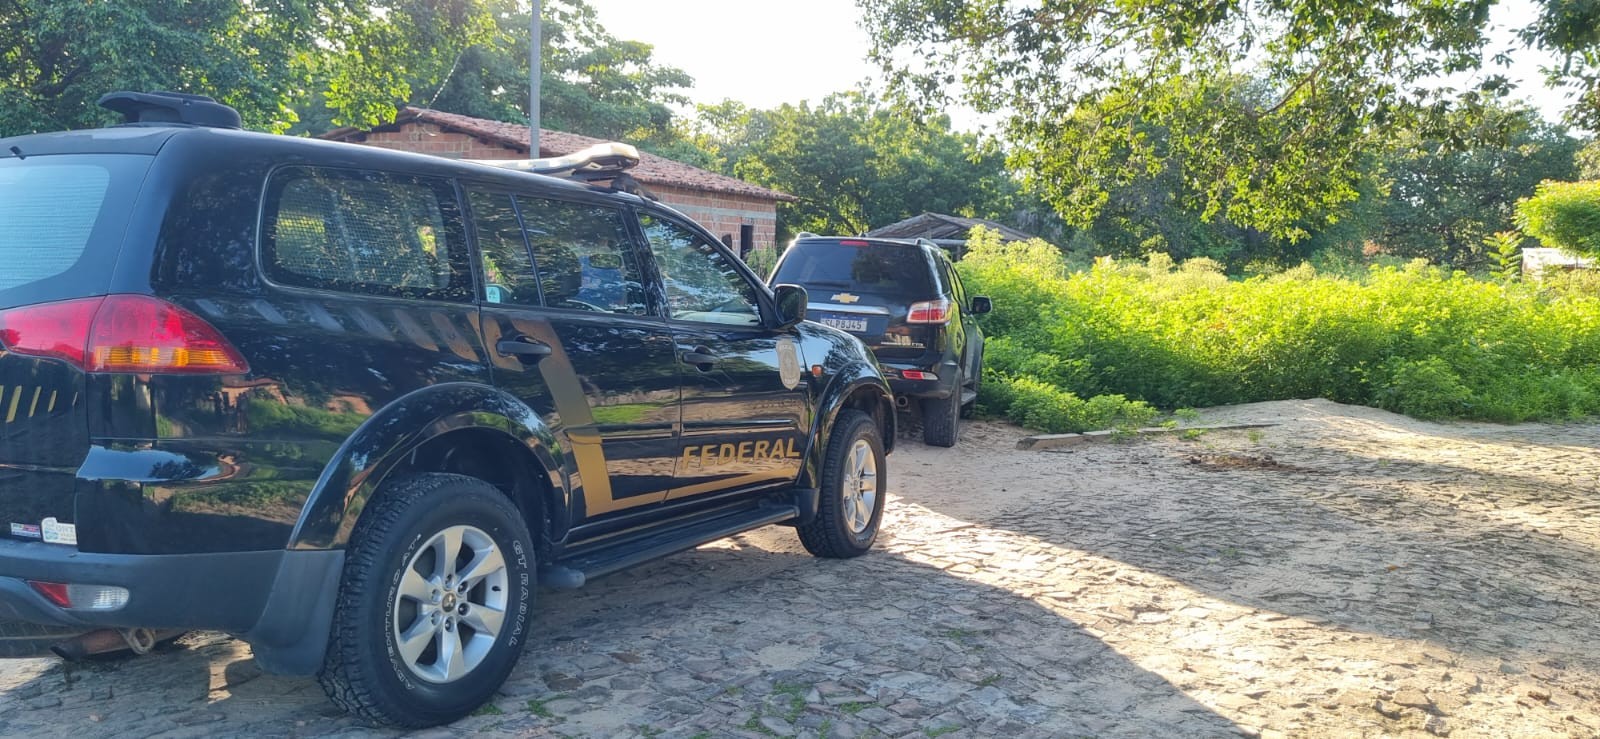 Polícia prende 12 membros de grupo criminoso suspeito de tráfico de drogas em Ilha Grande, no Piauí